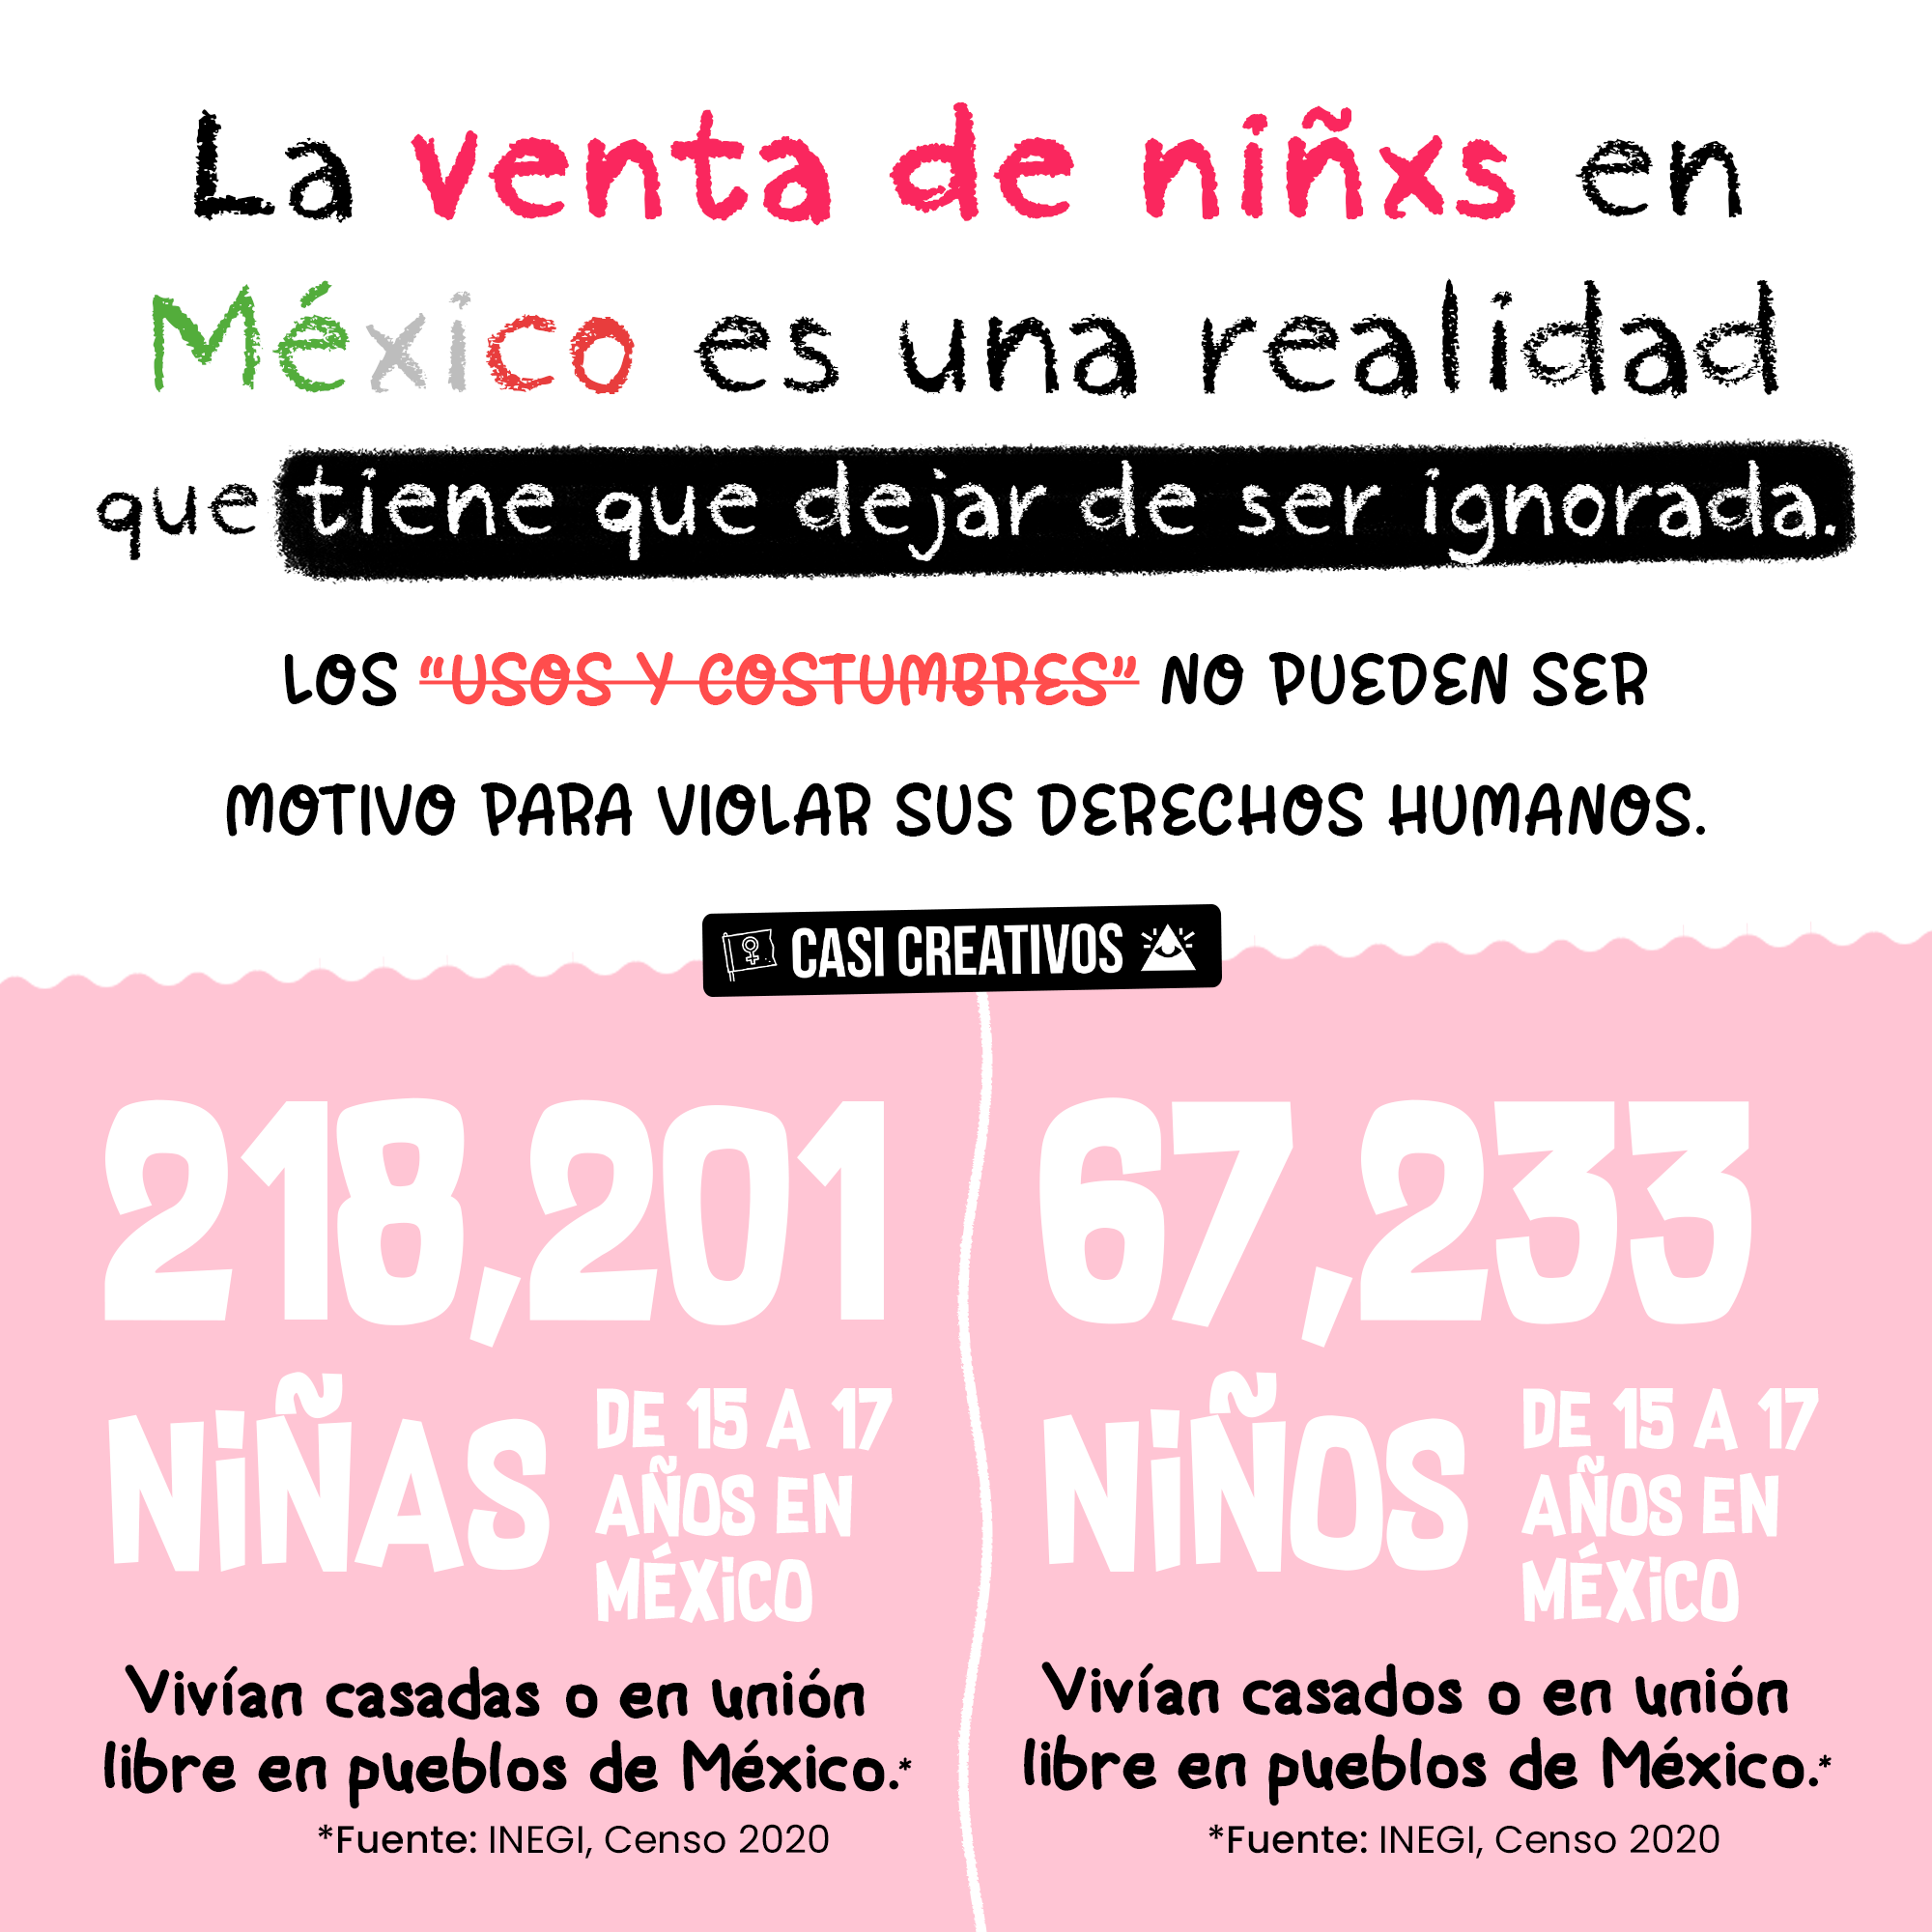 La venta de niños y niñas en México sigue siendo una realidad. Estadísticas del matrimonio infantil y compra venta de niñas